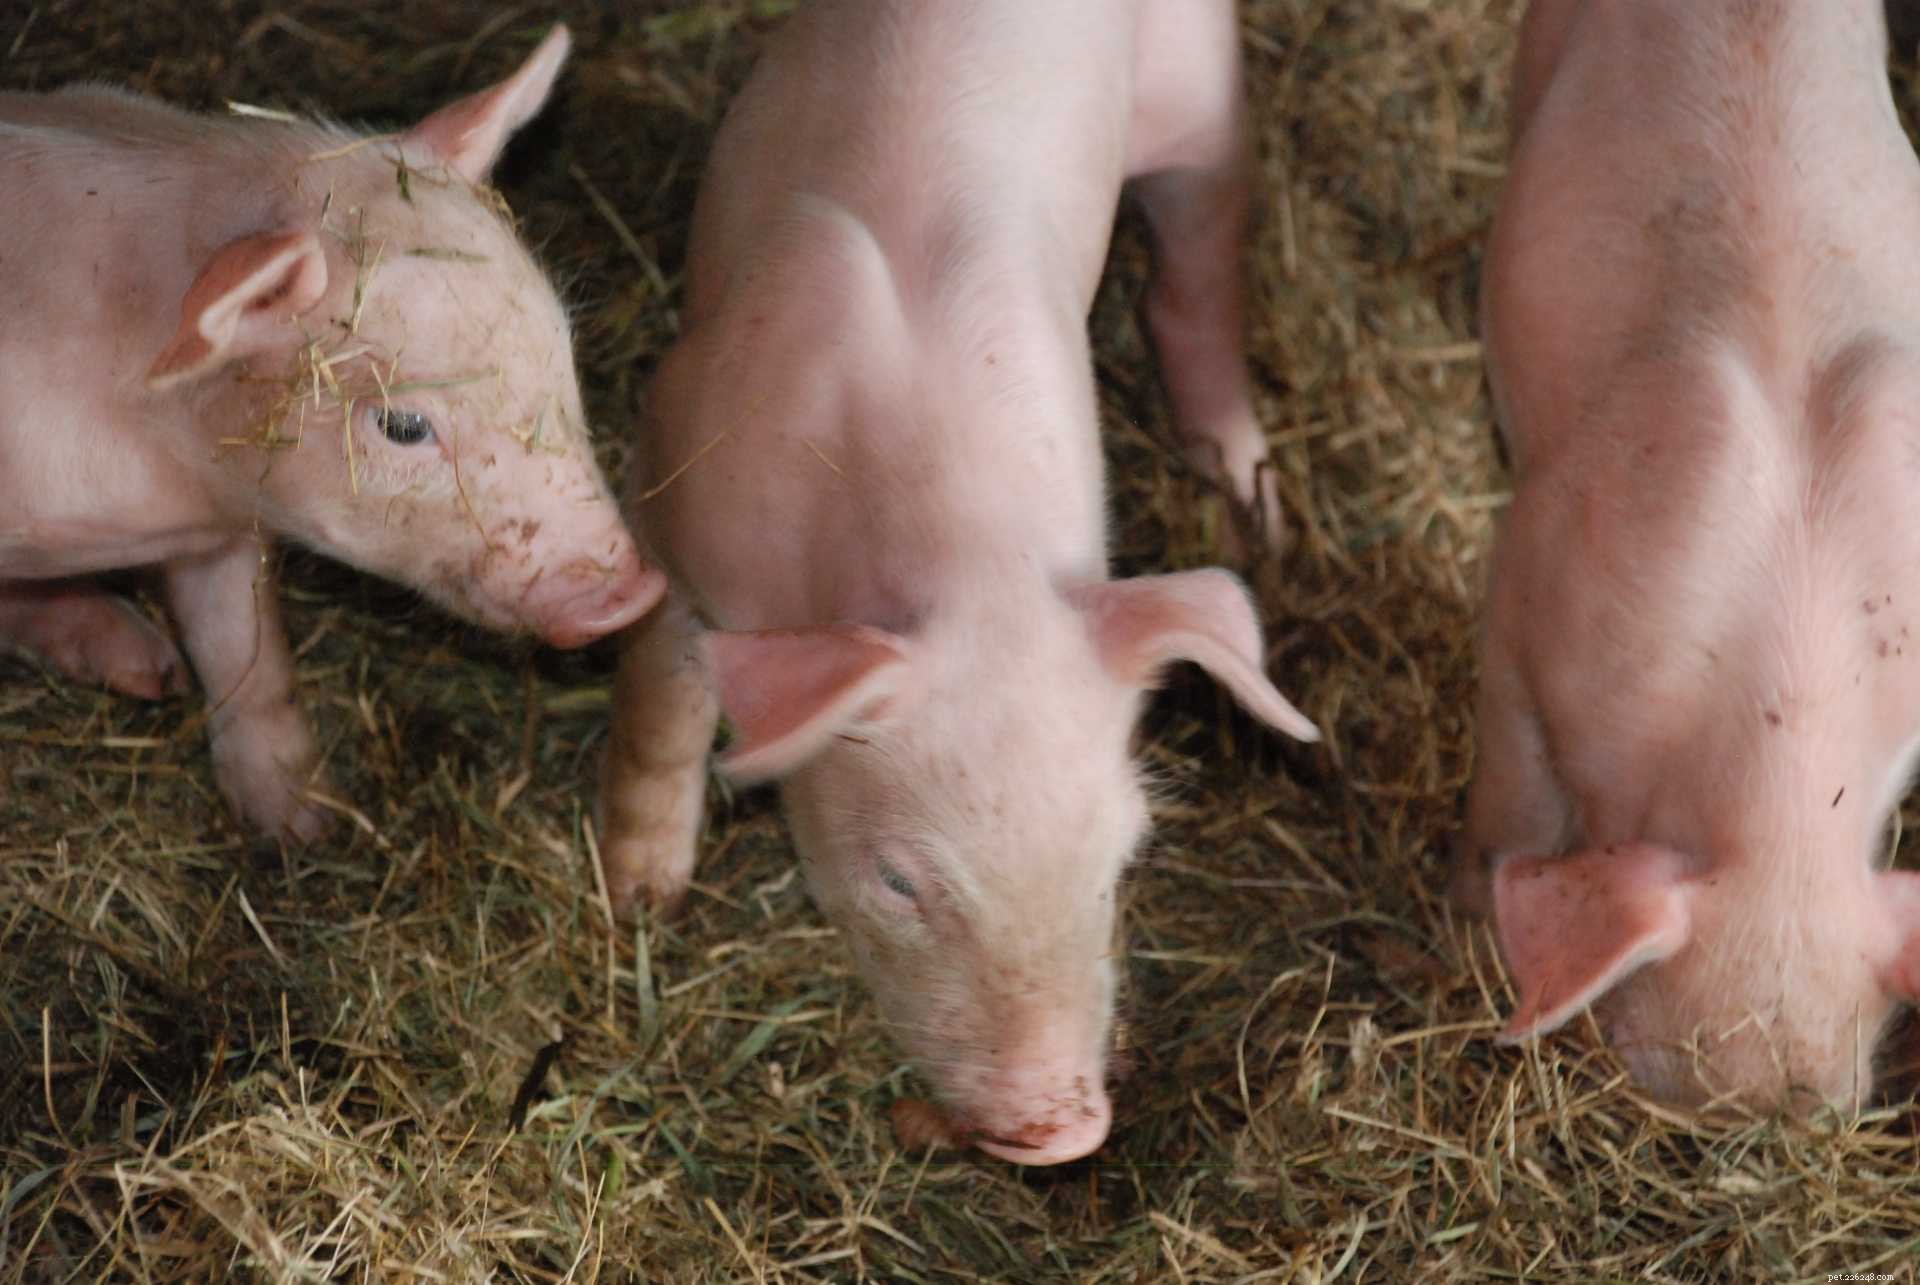 너무 귀엽지 않은 찻잔 돼지에 대한 8가지 사실